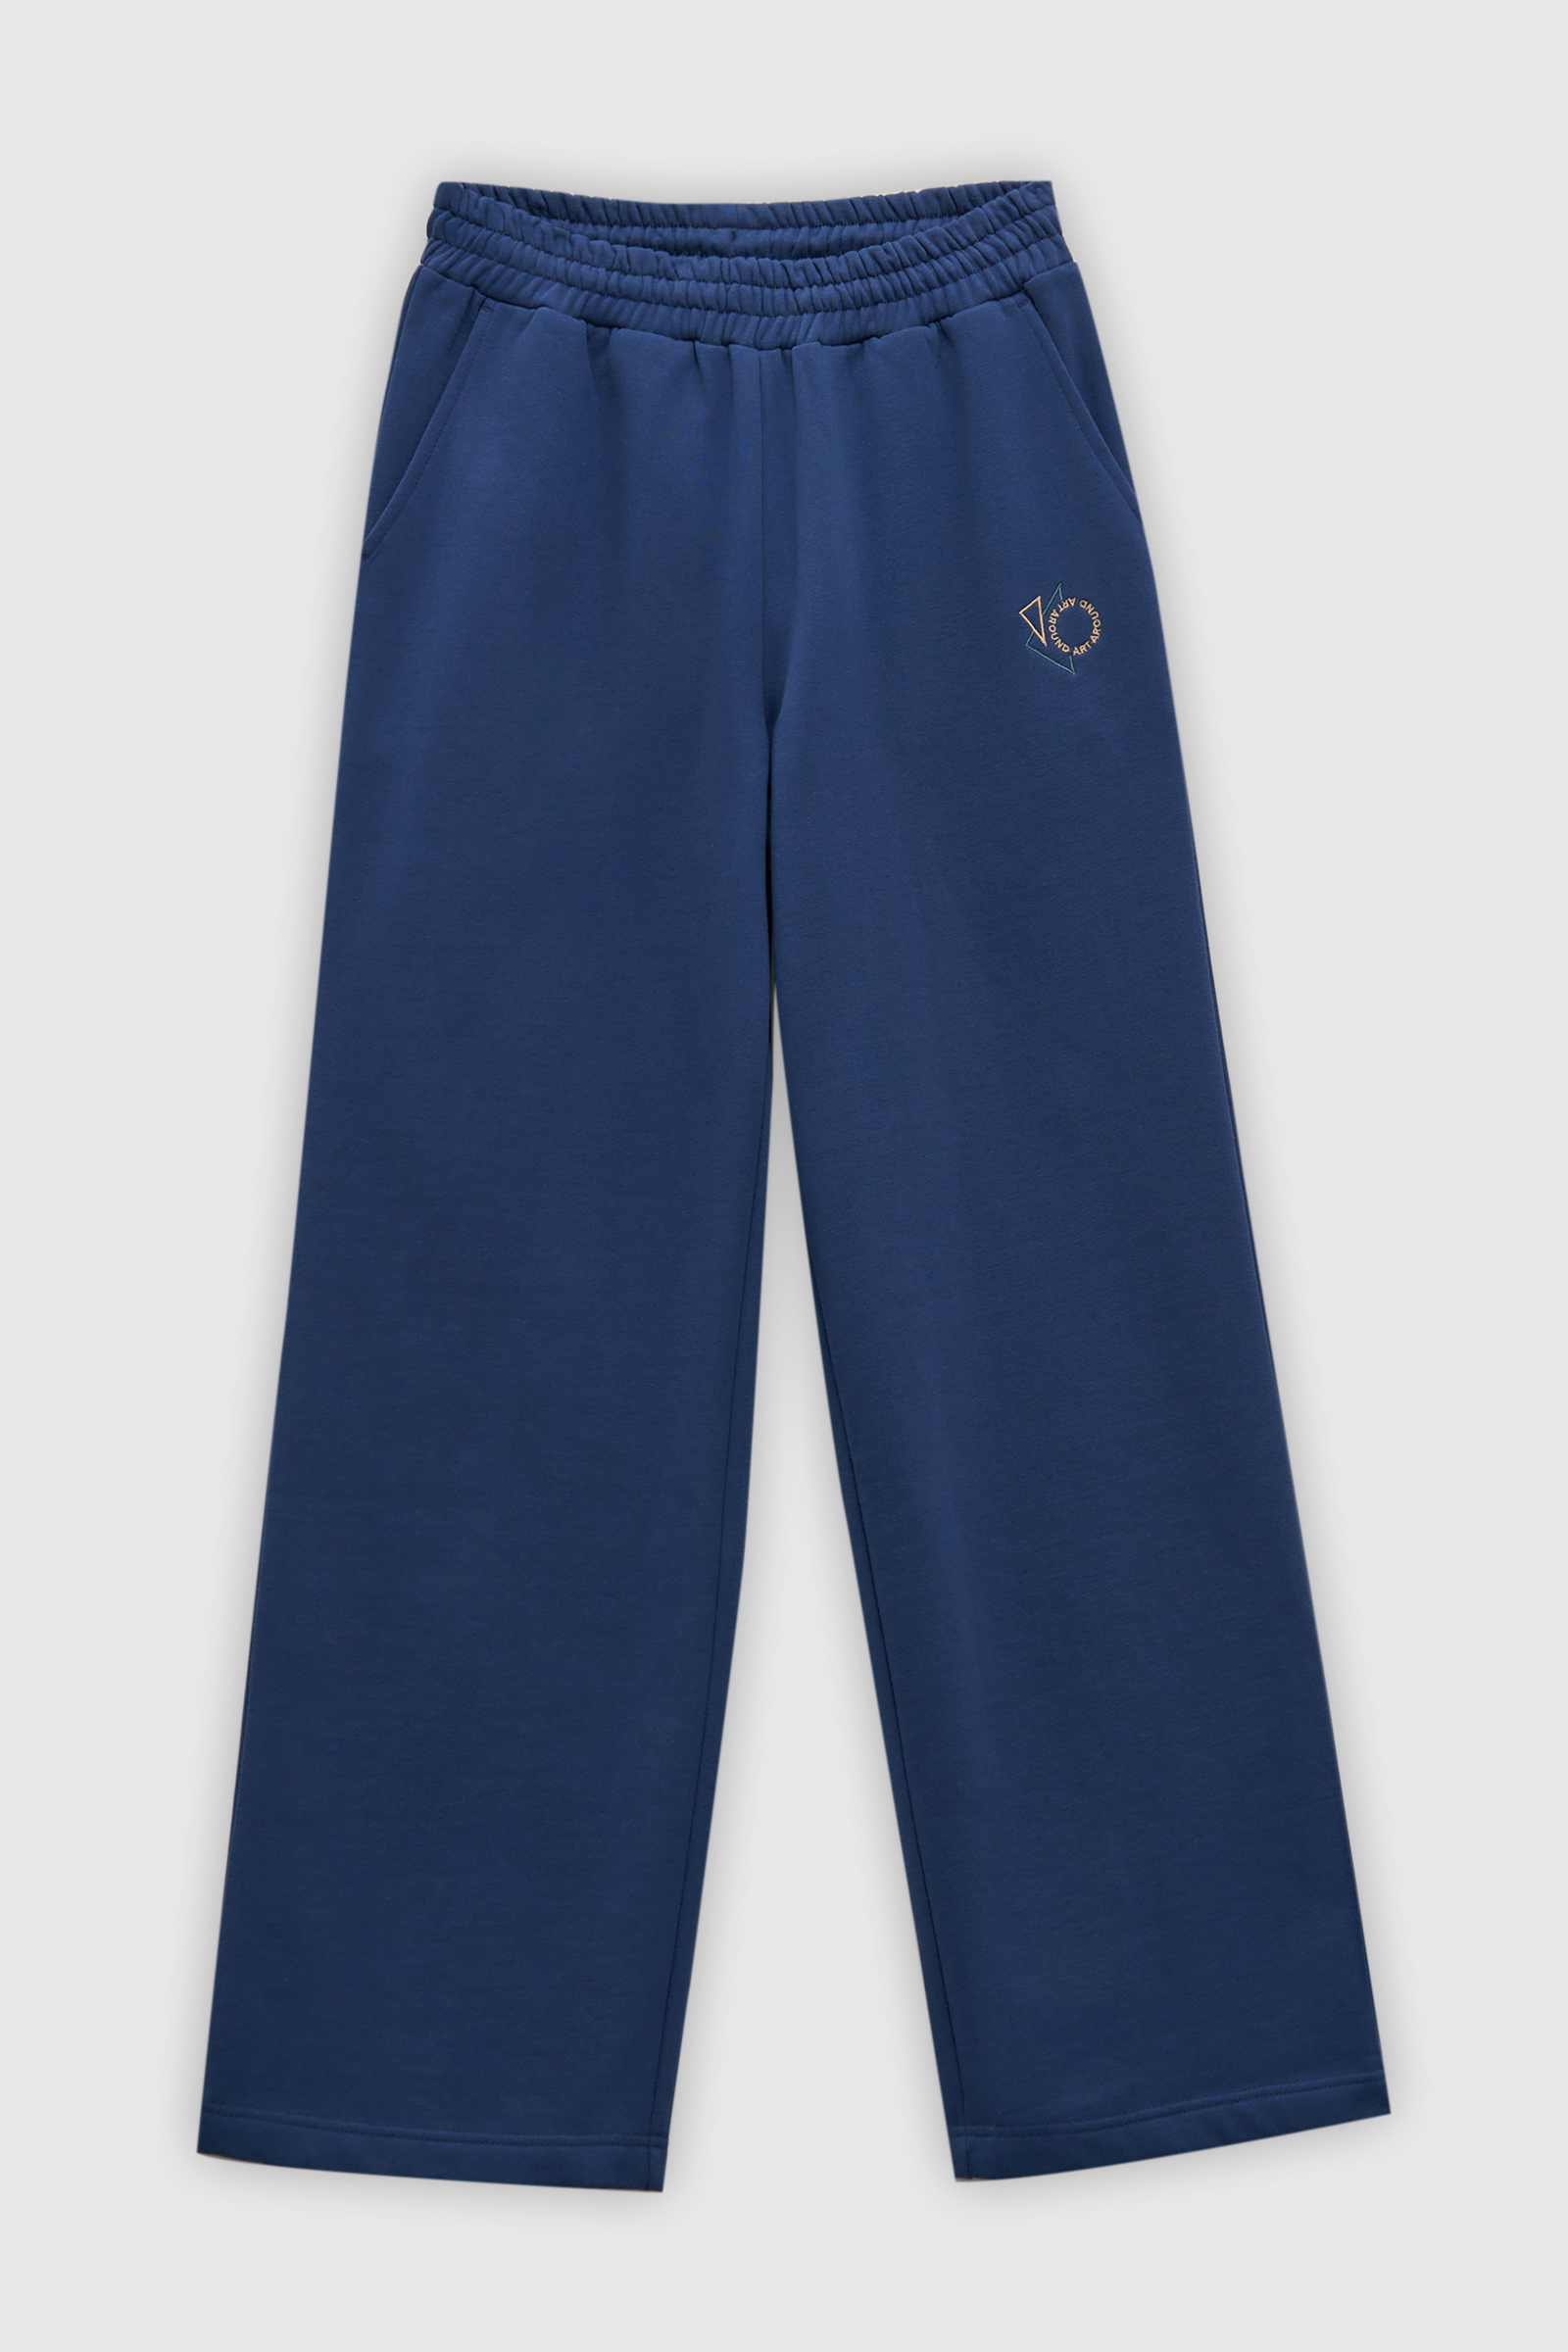 Спортивные брюки женские Finn Flare FAD110180 синие XL